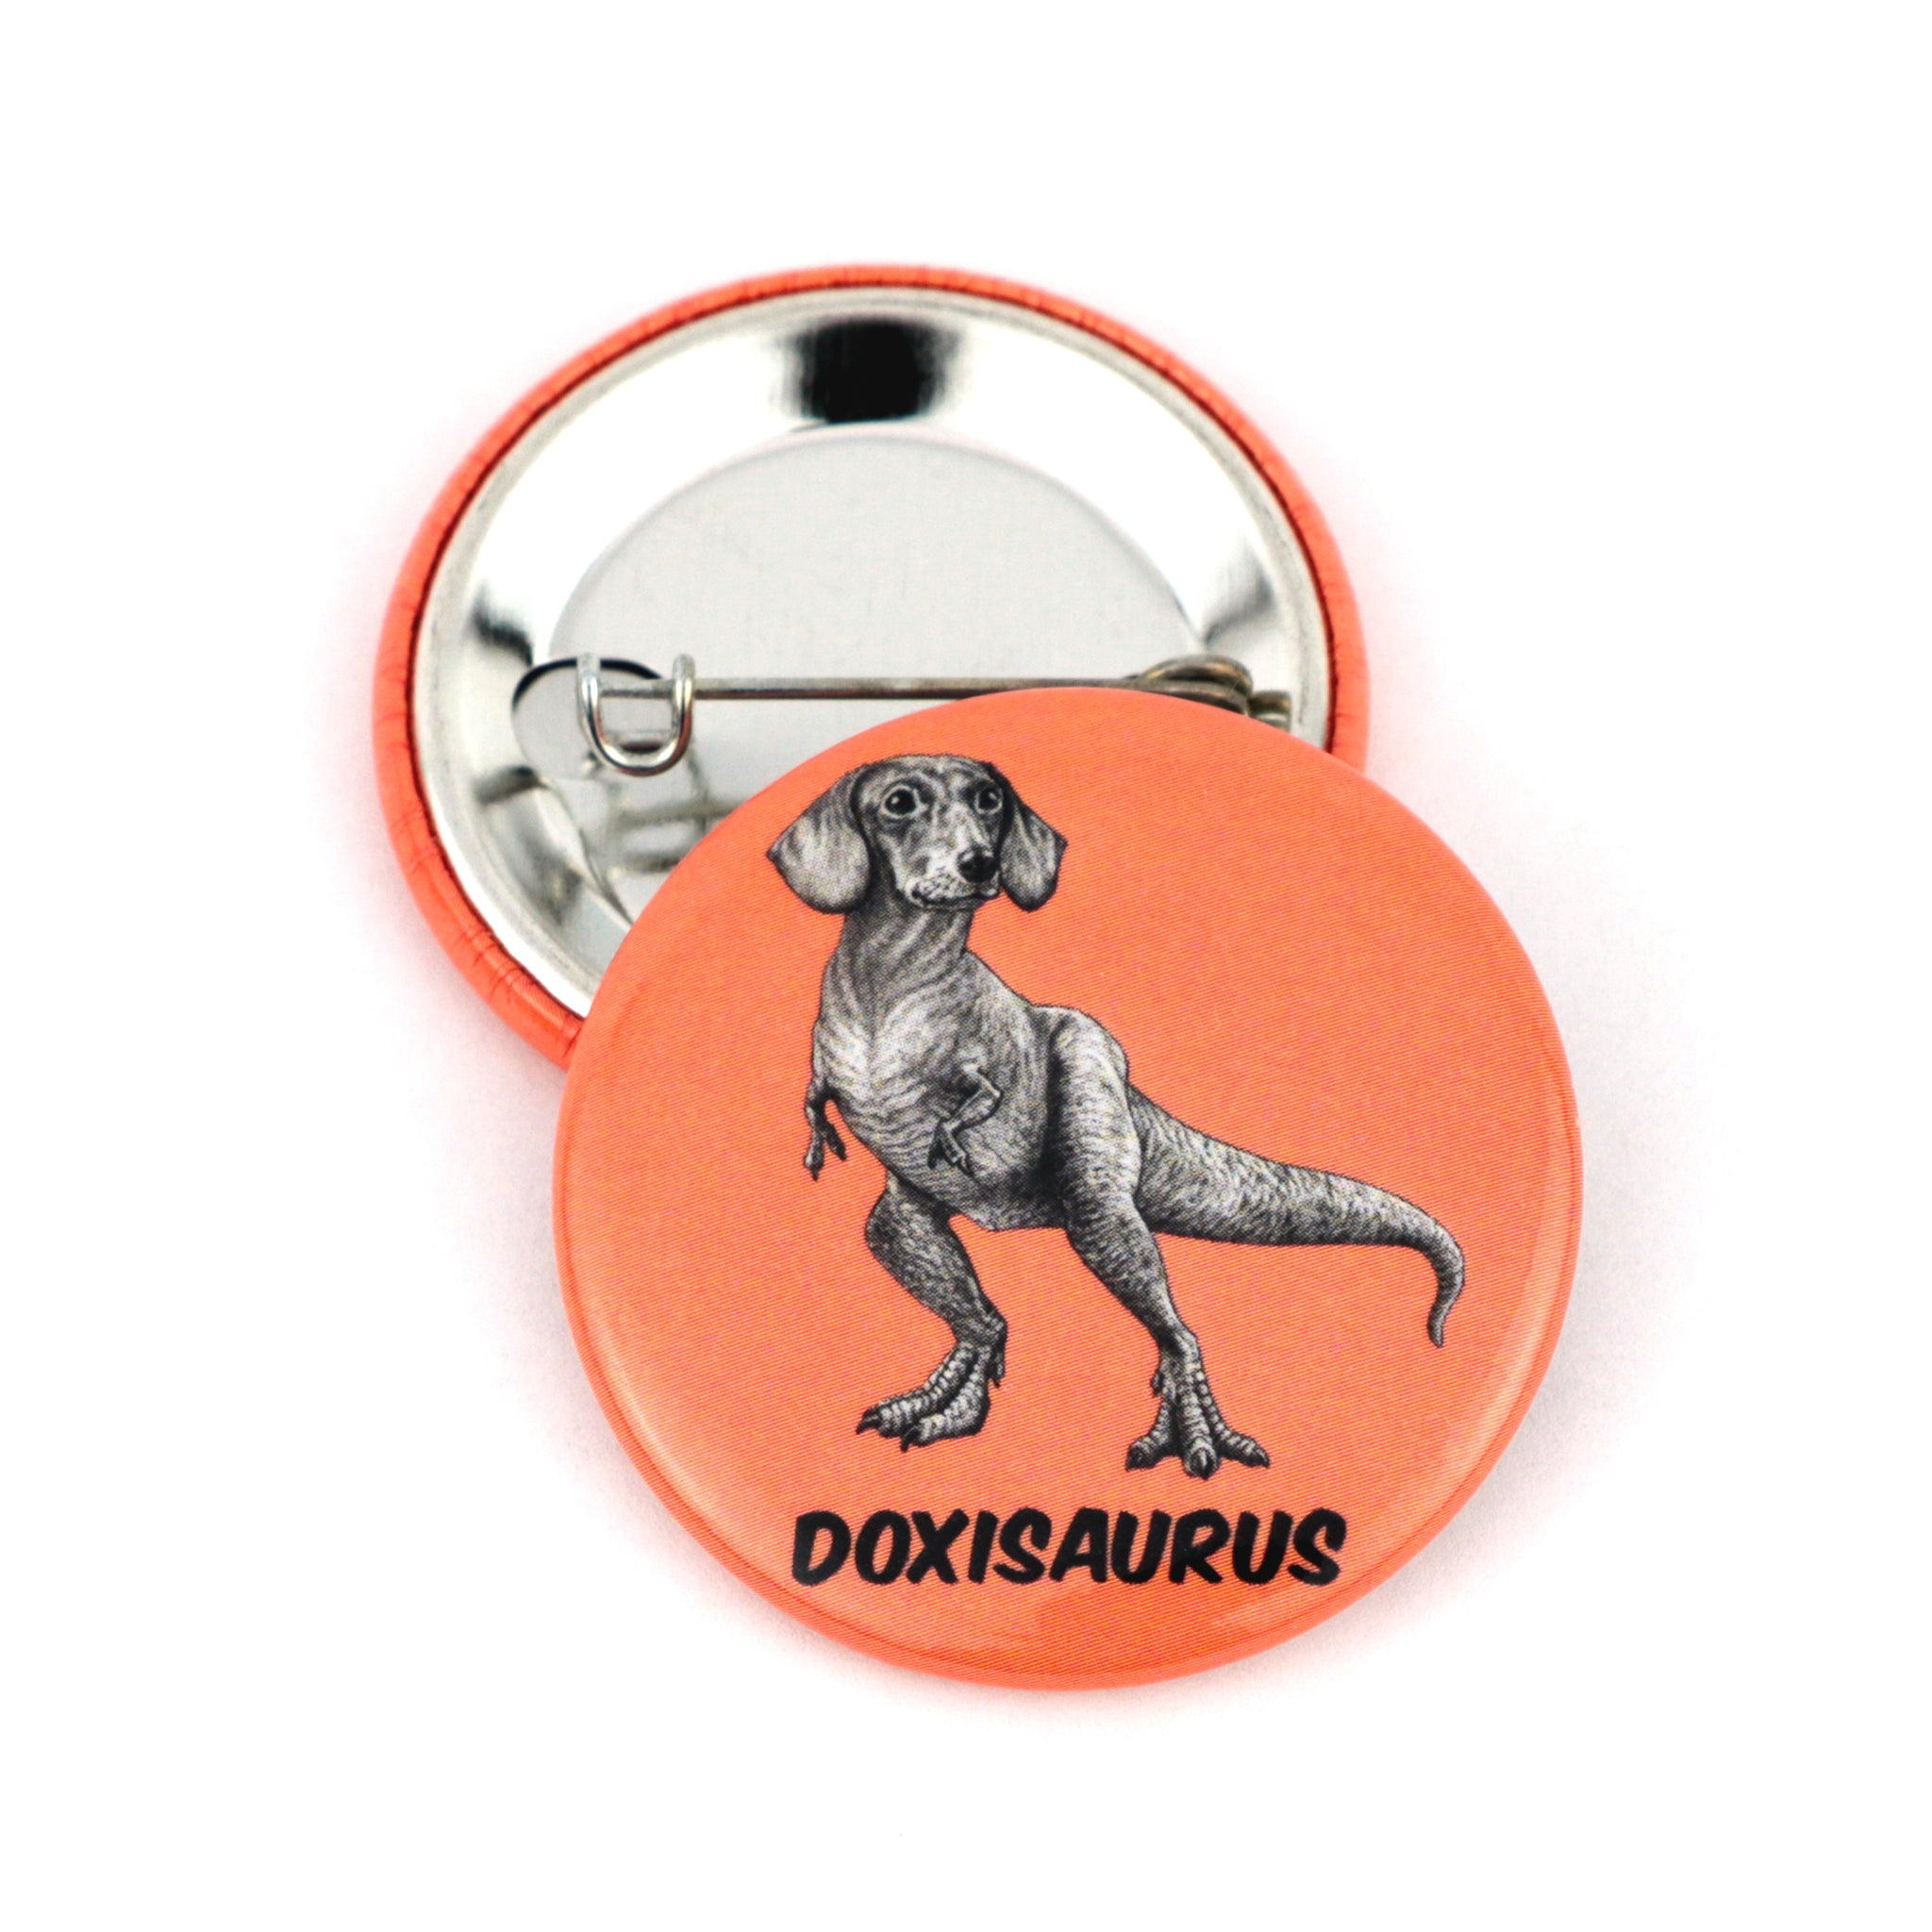 Doxisaurus | Dachshund + TRex Hybrid Animal | 1.5" Pinback Button